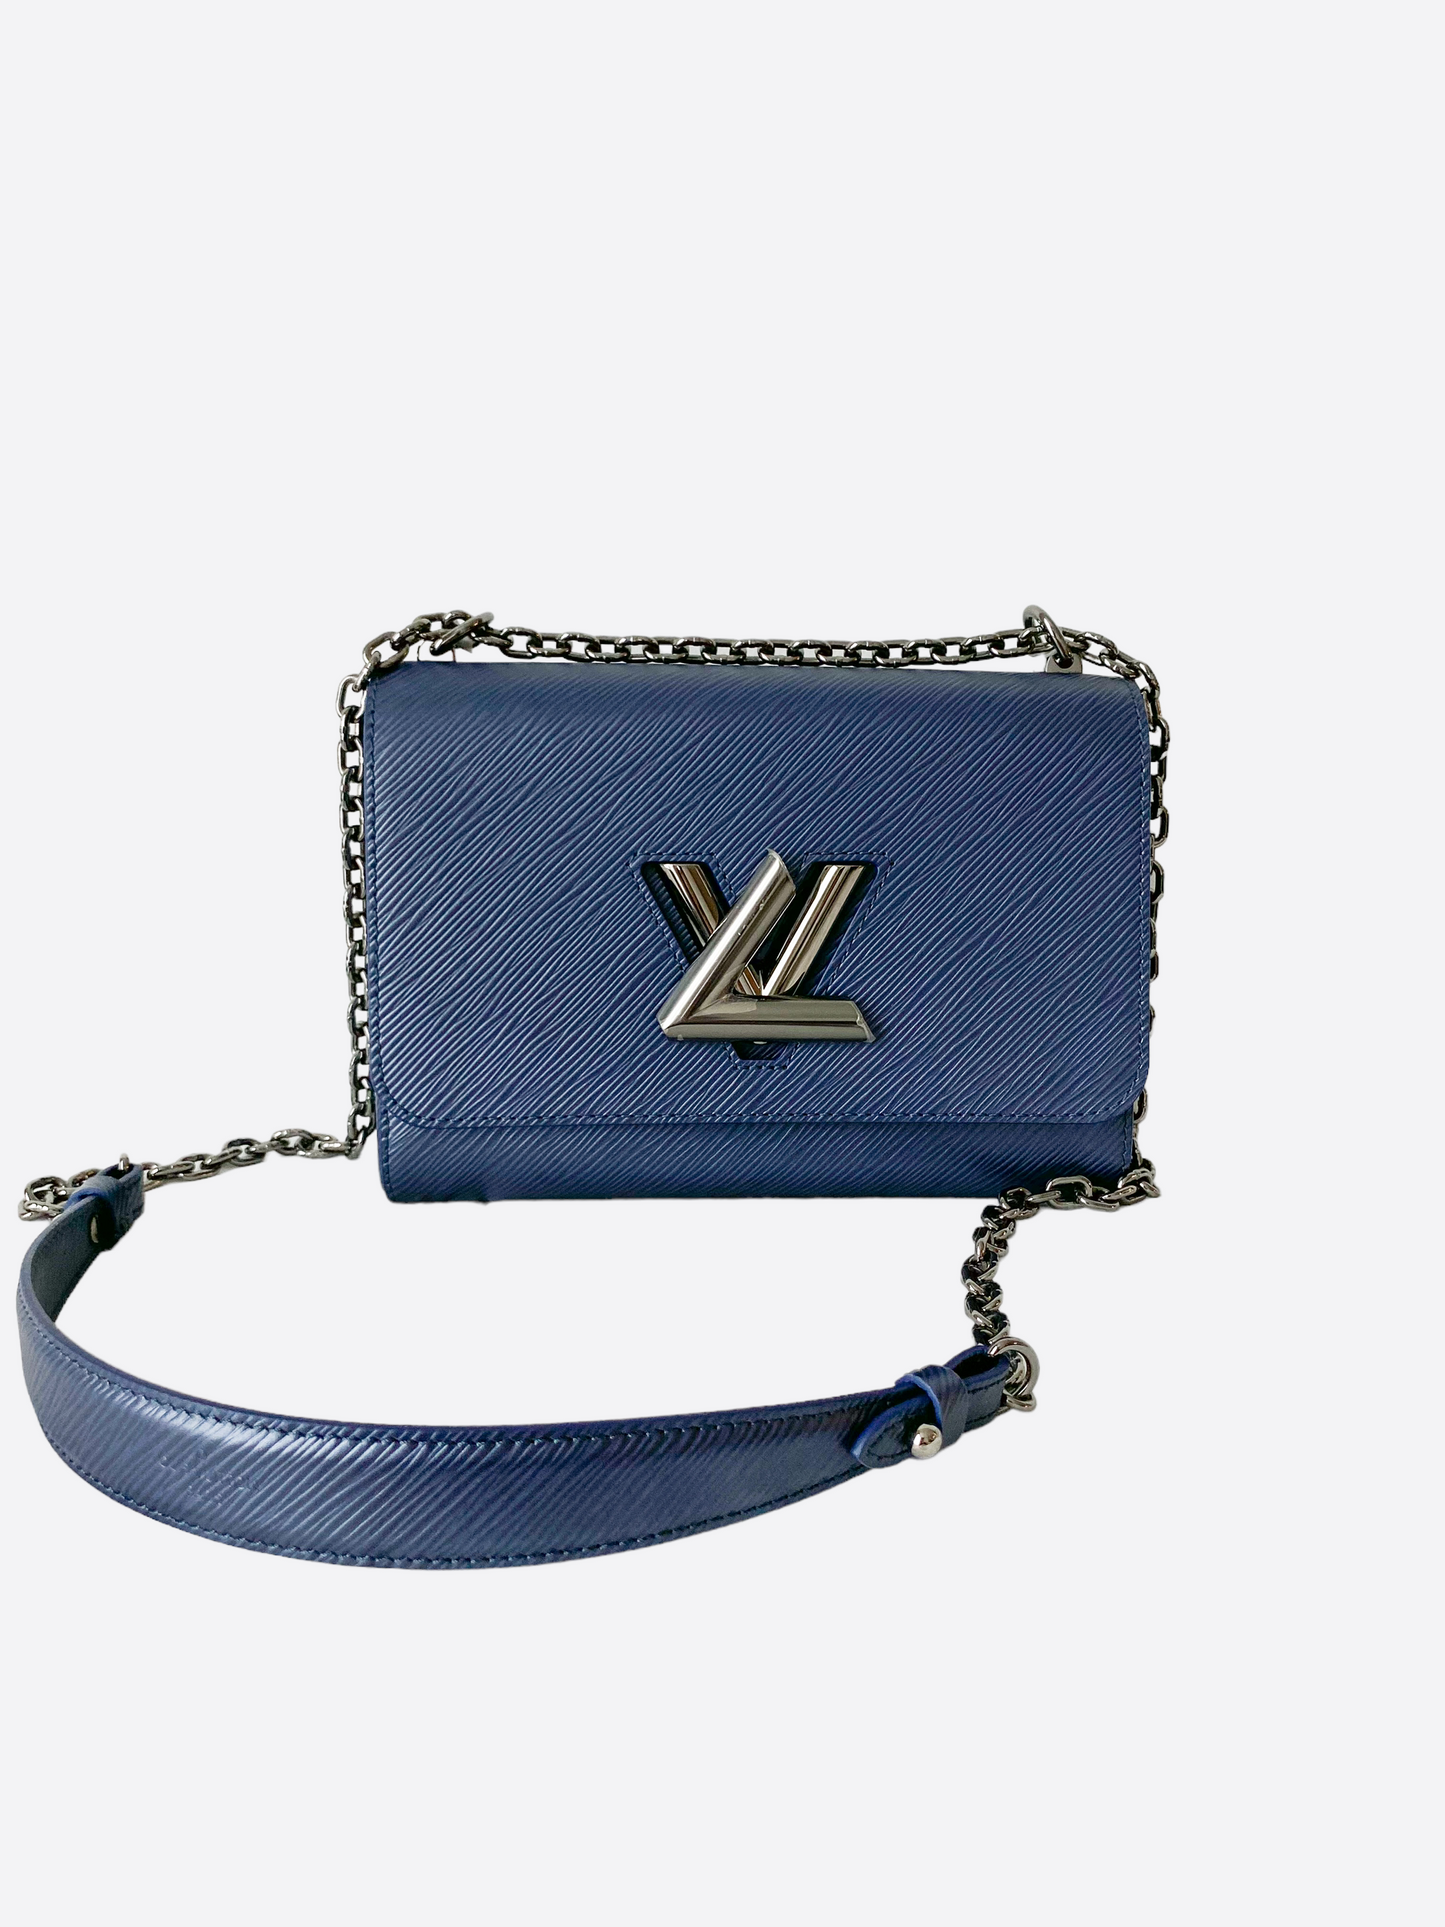 Louis Vuitton Twist MM Shoulder Bag Epi Leather White